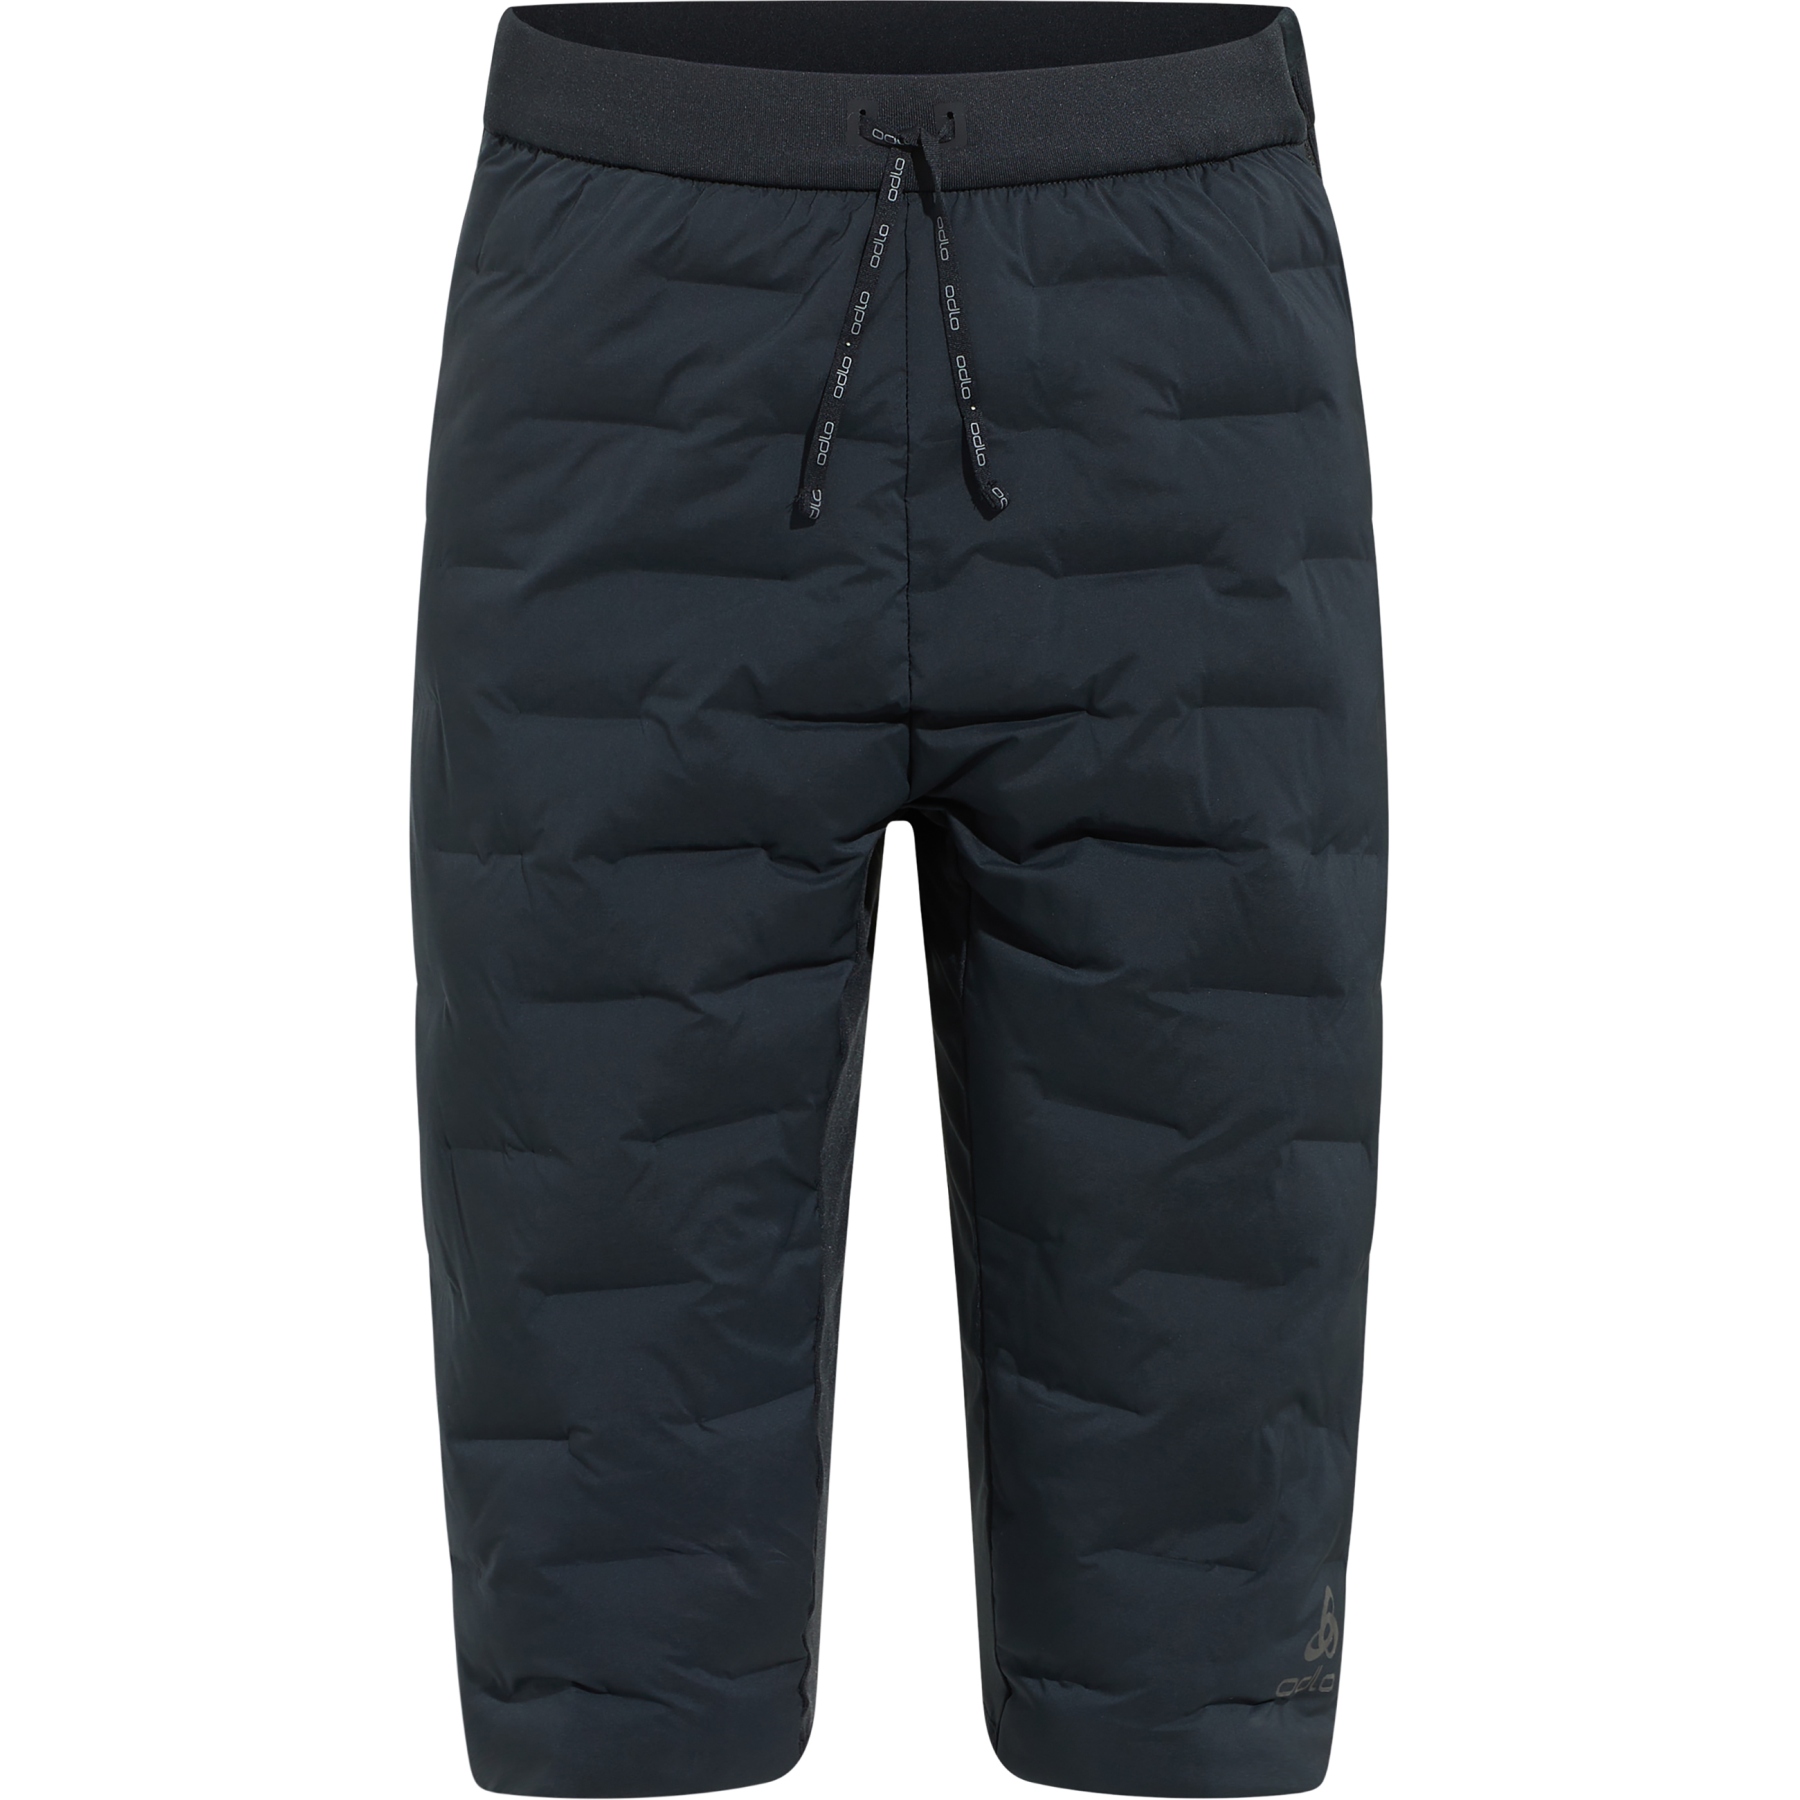 ODLO-PANTS ENGVIK JUNIOR BLACK - Cross-country ski trousers